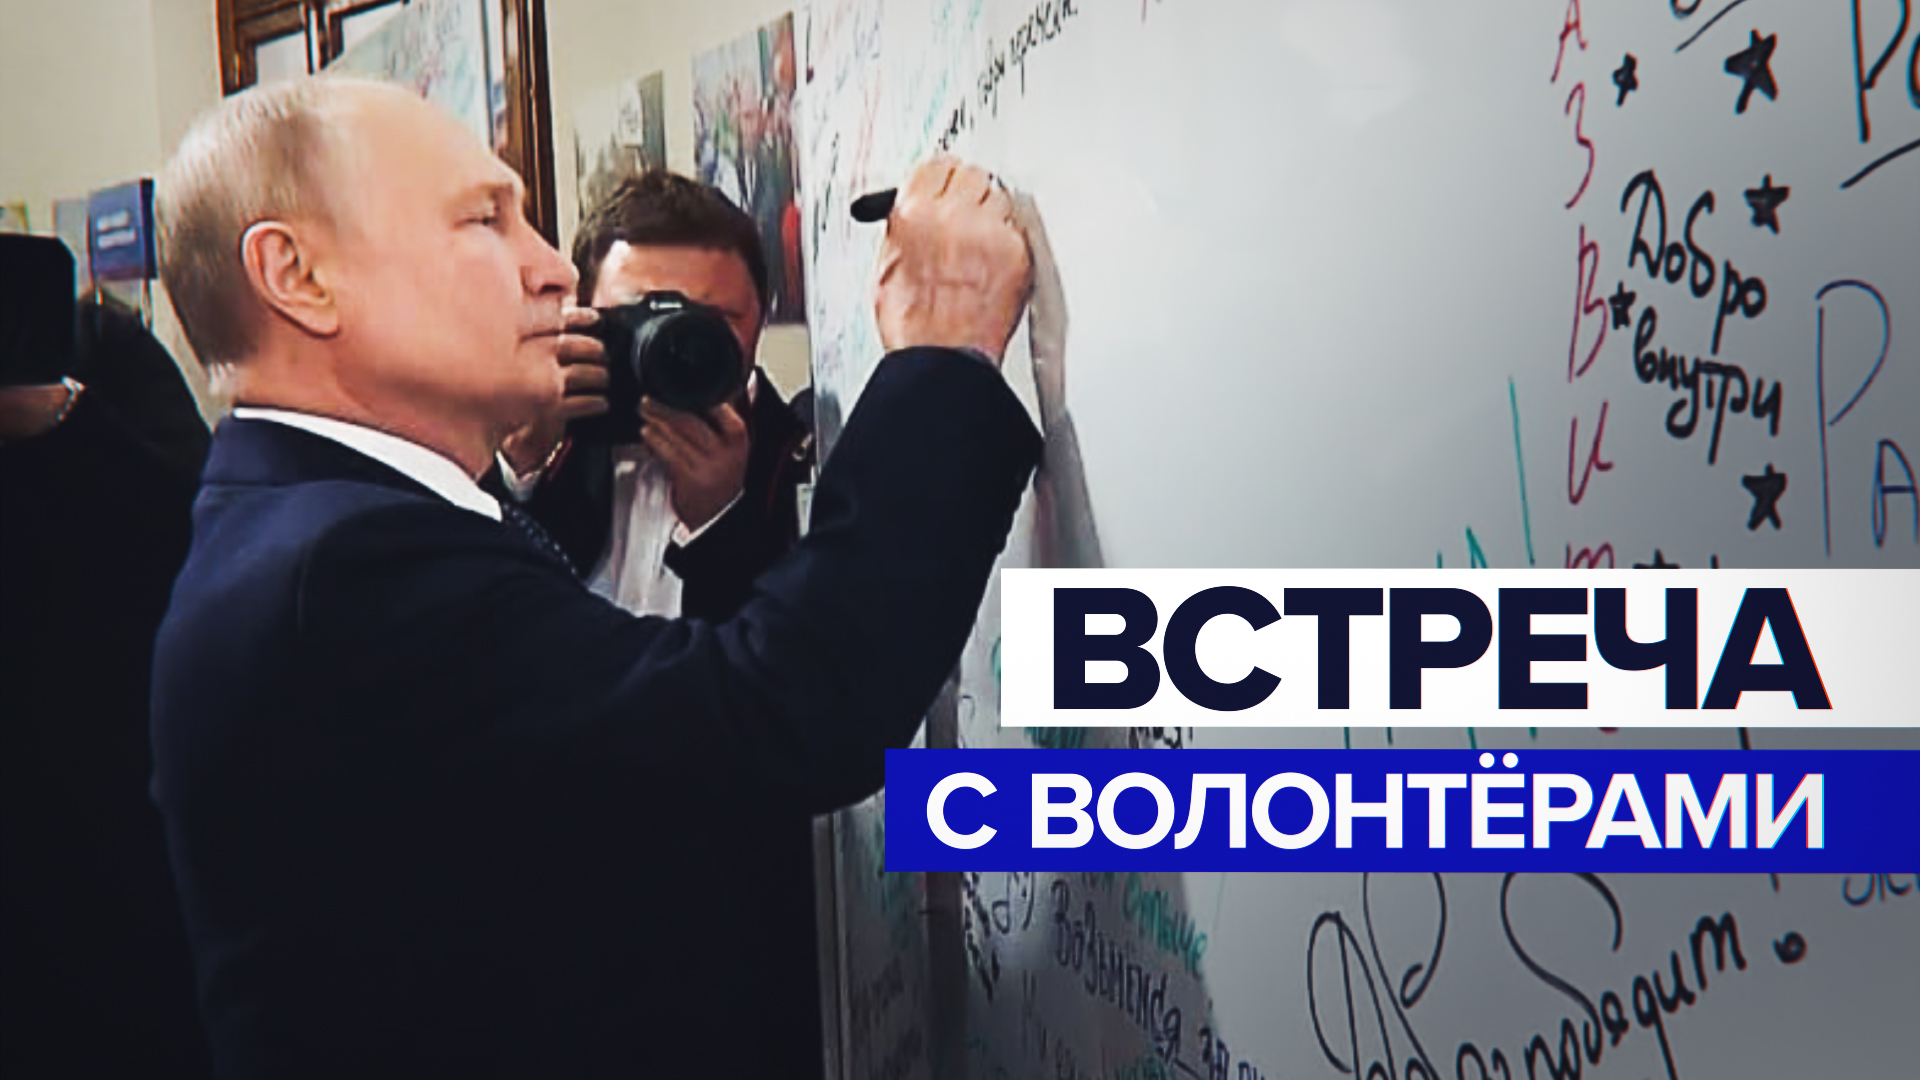 «У нас общая задача — укрепление Отечества»: Путин пообщался с волонтёрами в избирательном штабе